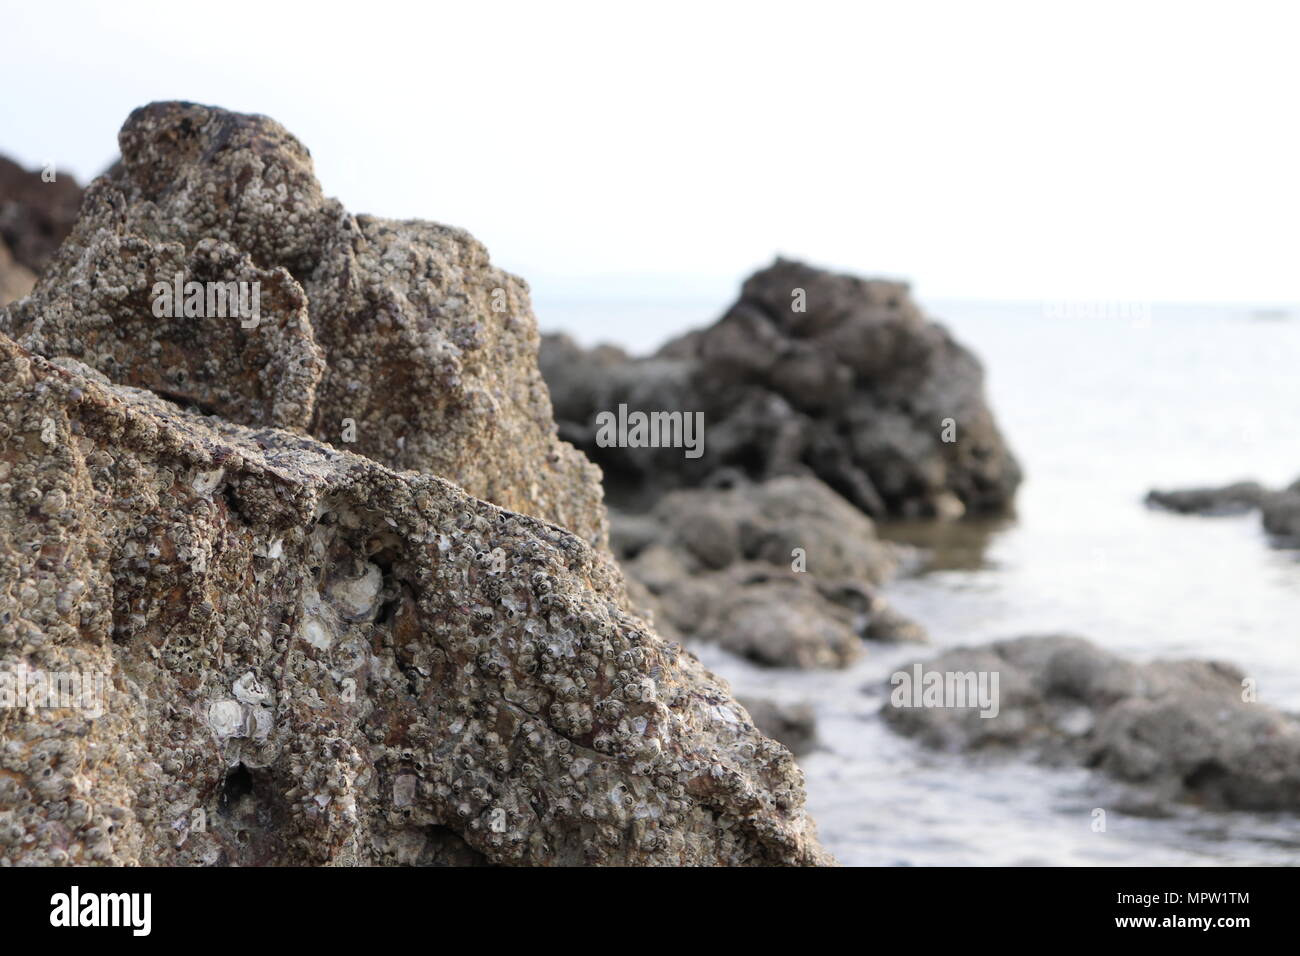 Un close-up de algunas rocas aleatorias en el sur de Tailandia Foto de stock